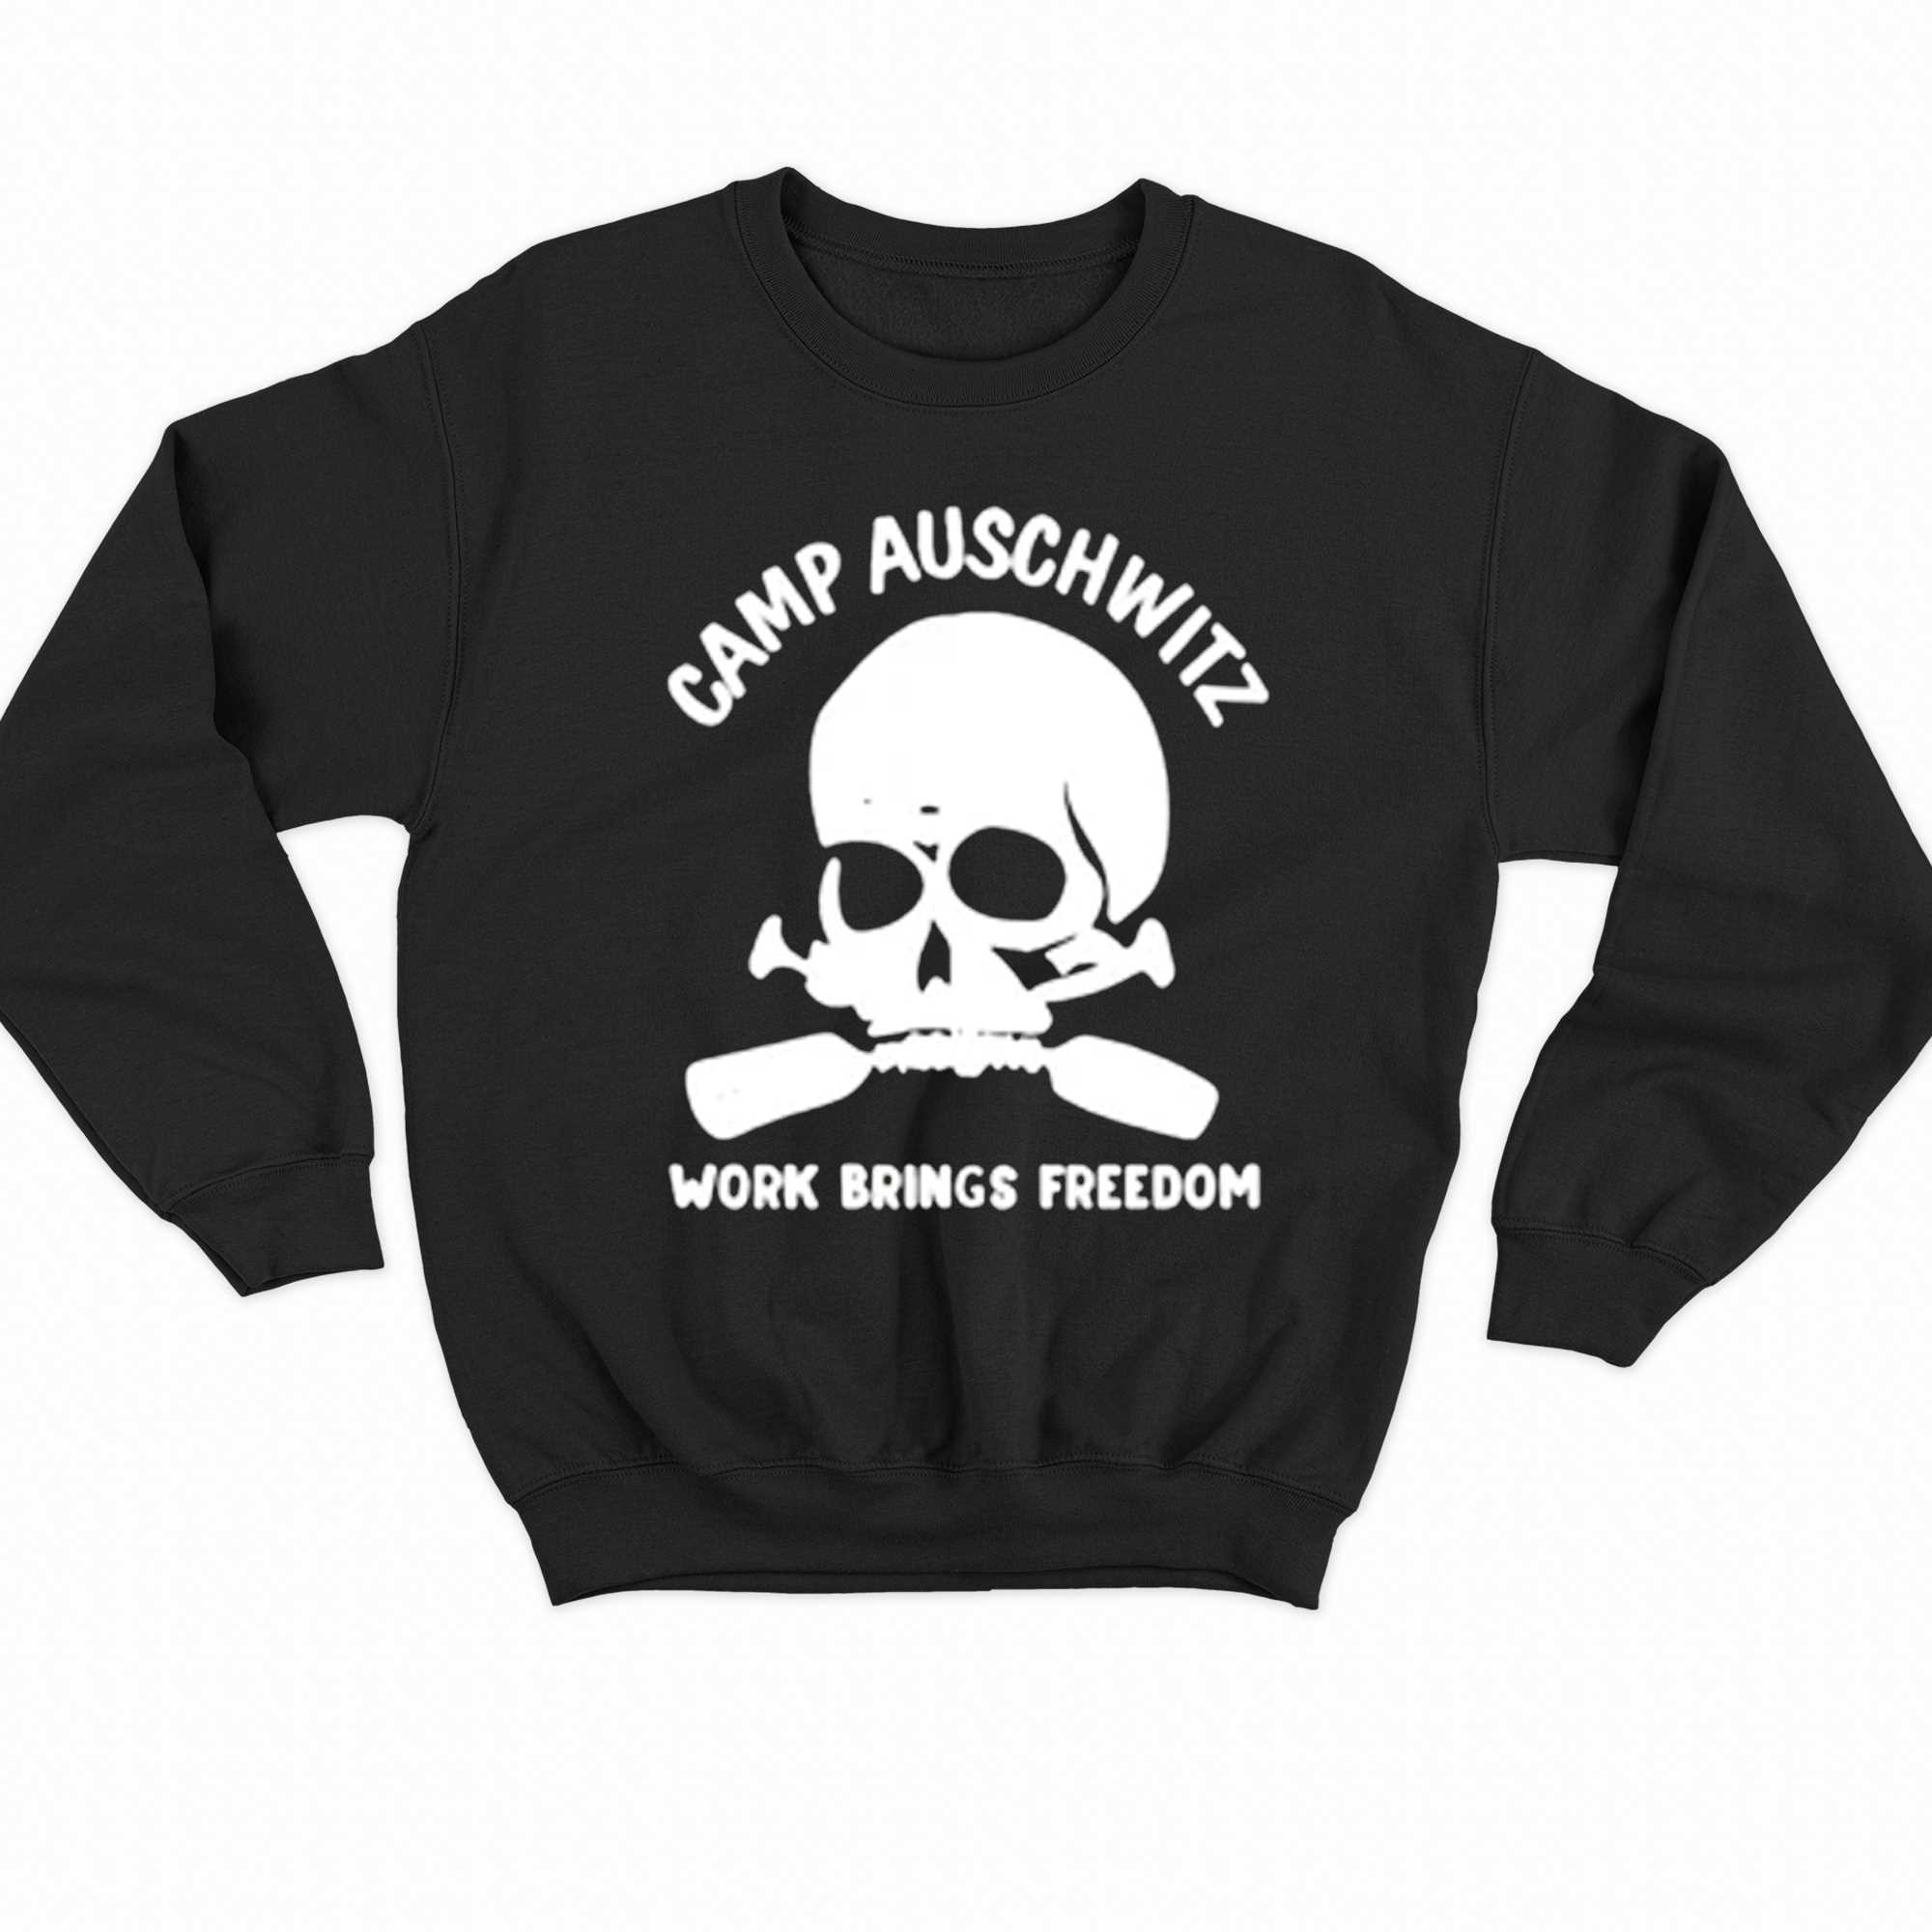 Camp Auschwitz Shirt Work Brings Freedom 